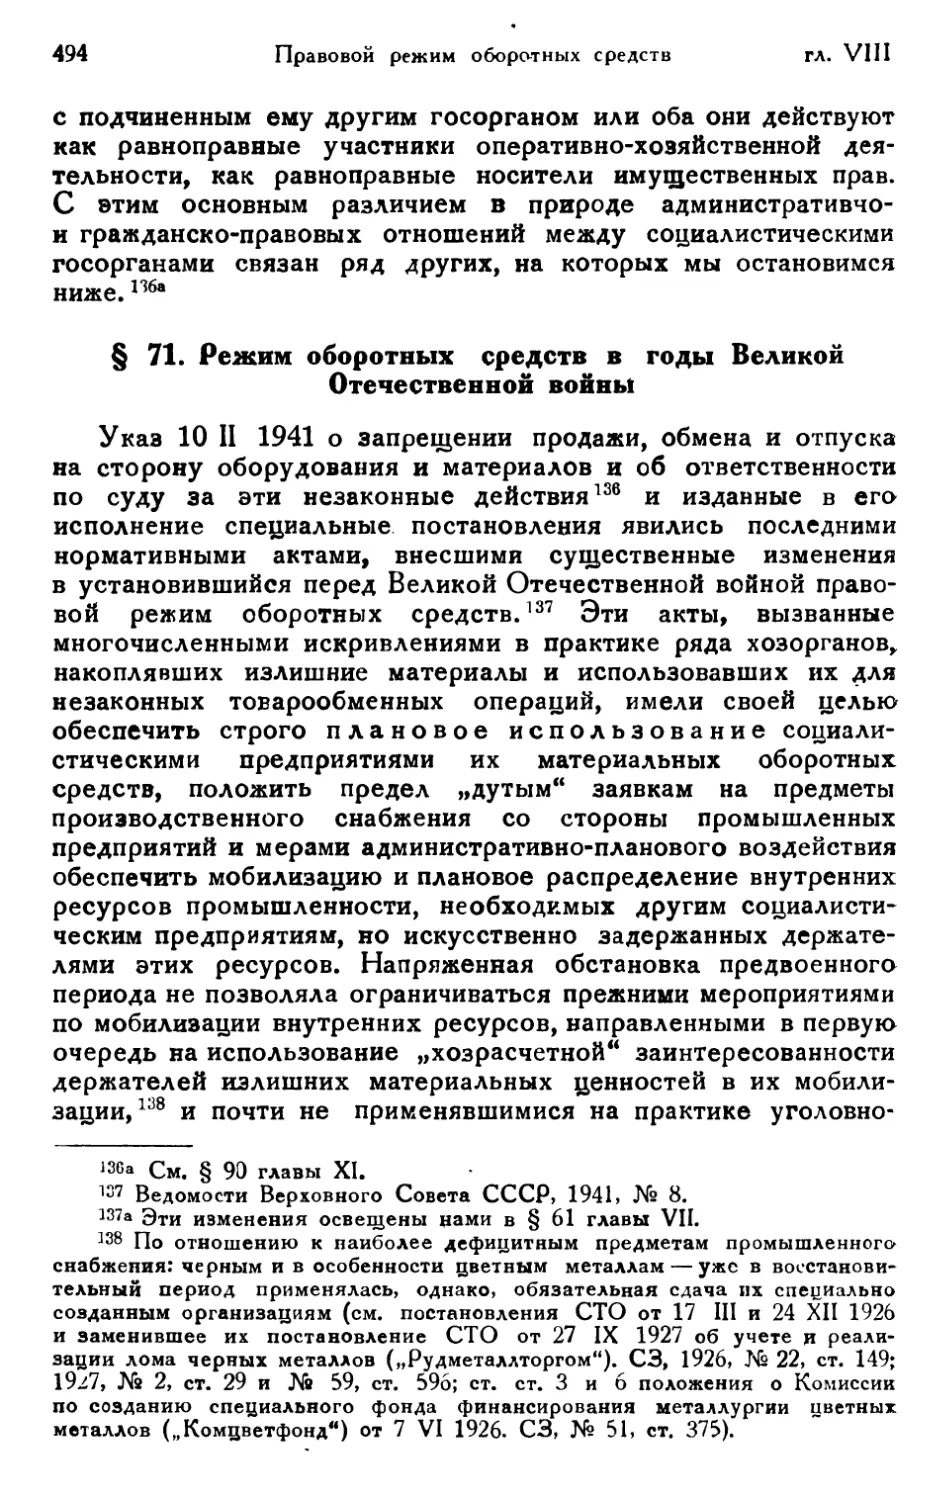 § 71. Режим оборотных средств в годы Великой Отечественной войны